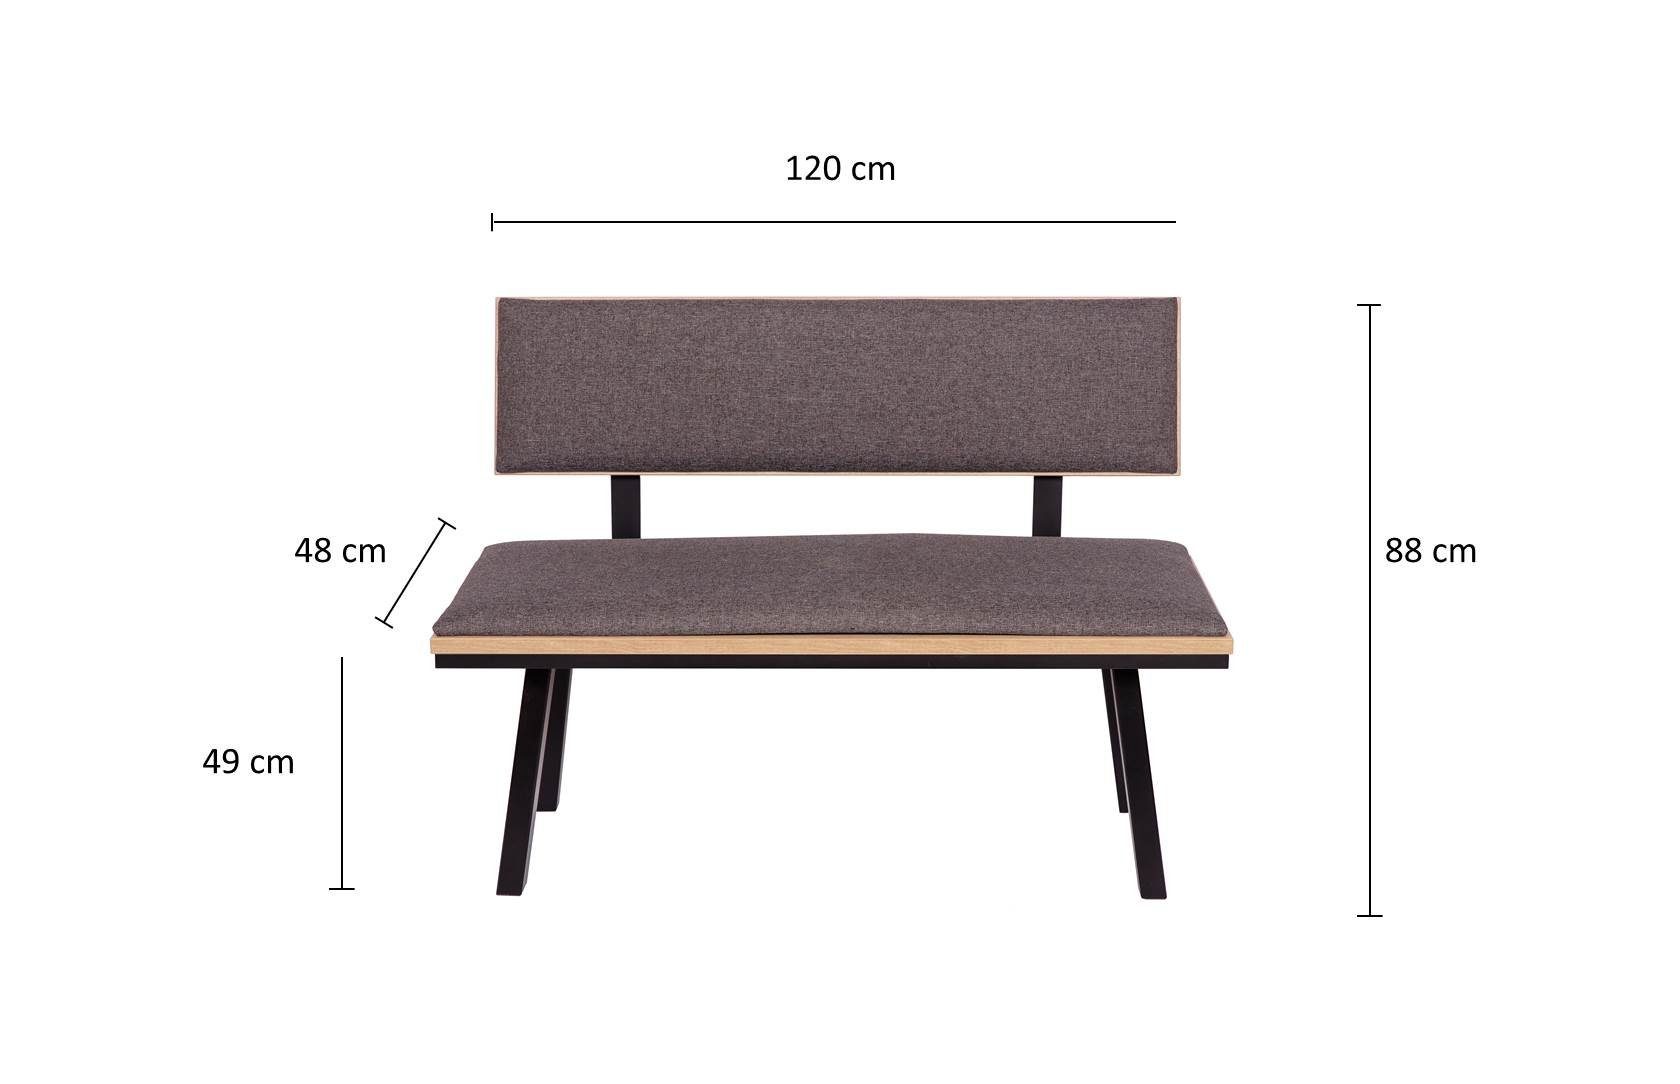 Holz, Set Elegante' Füße 120cm, 3-tlg. Tisch kundler Massiv home Essgruppe 'Die Sitzbank